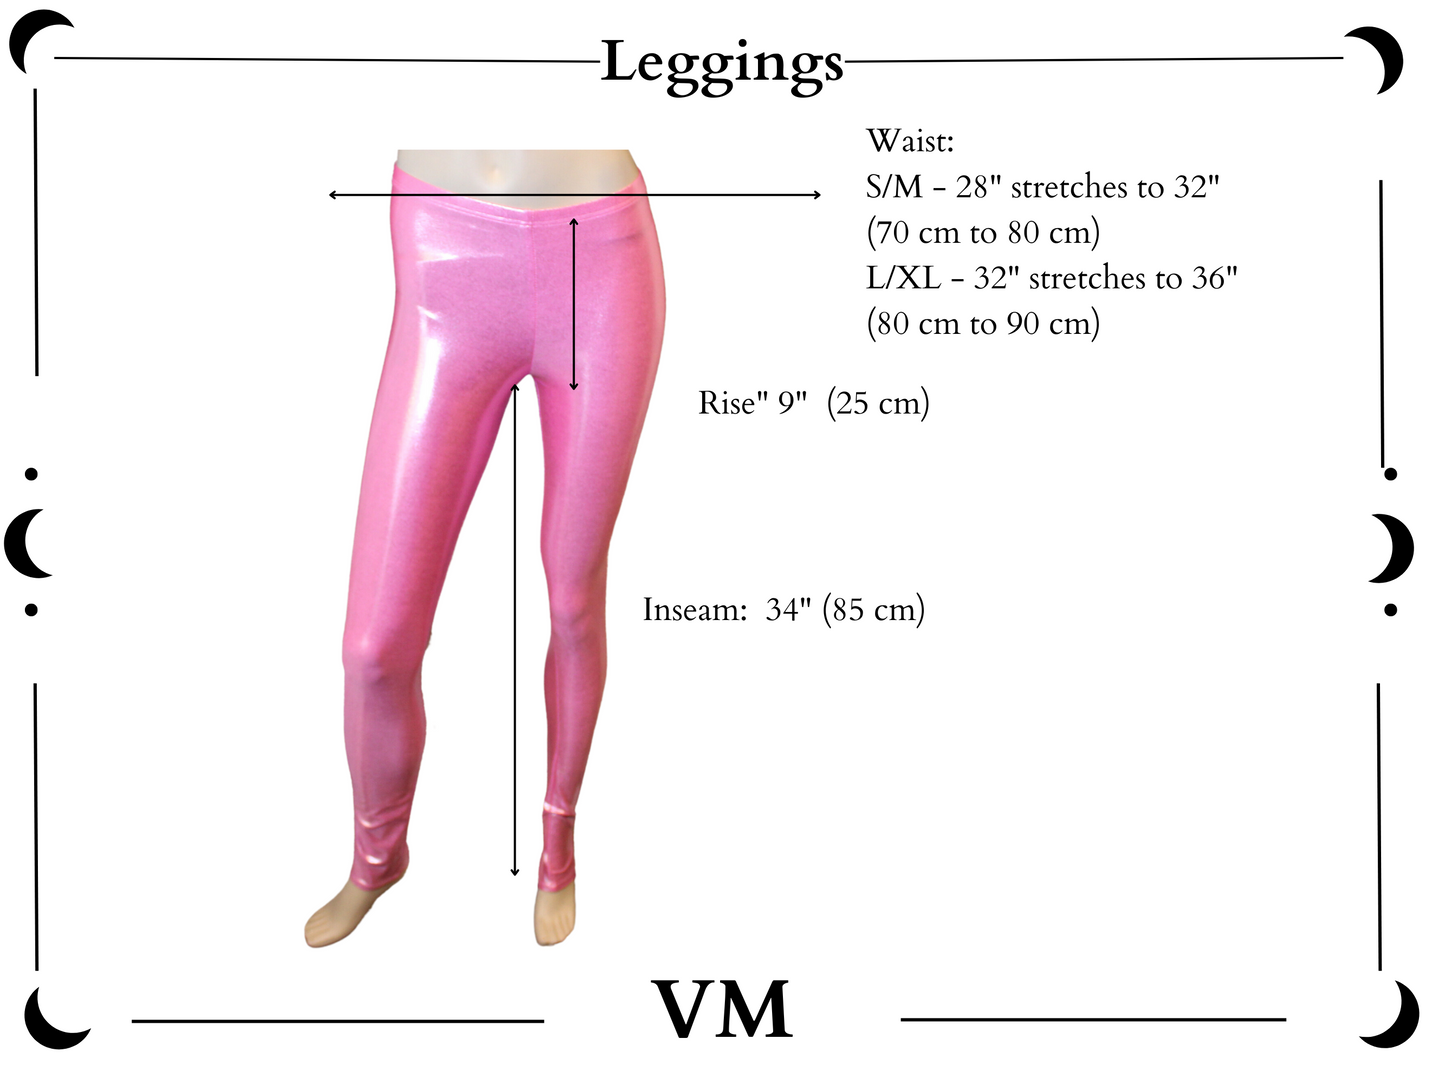 The VM Festival Leggings